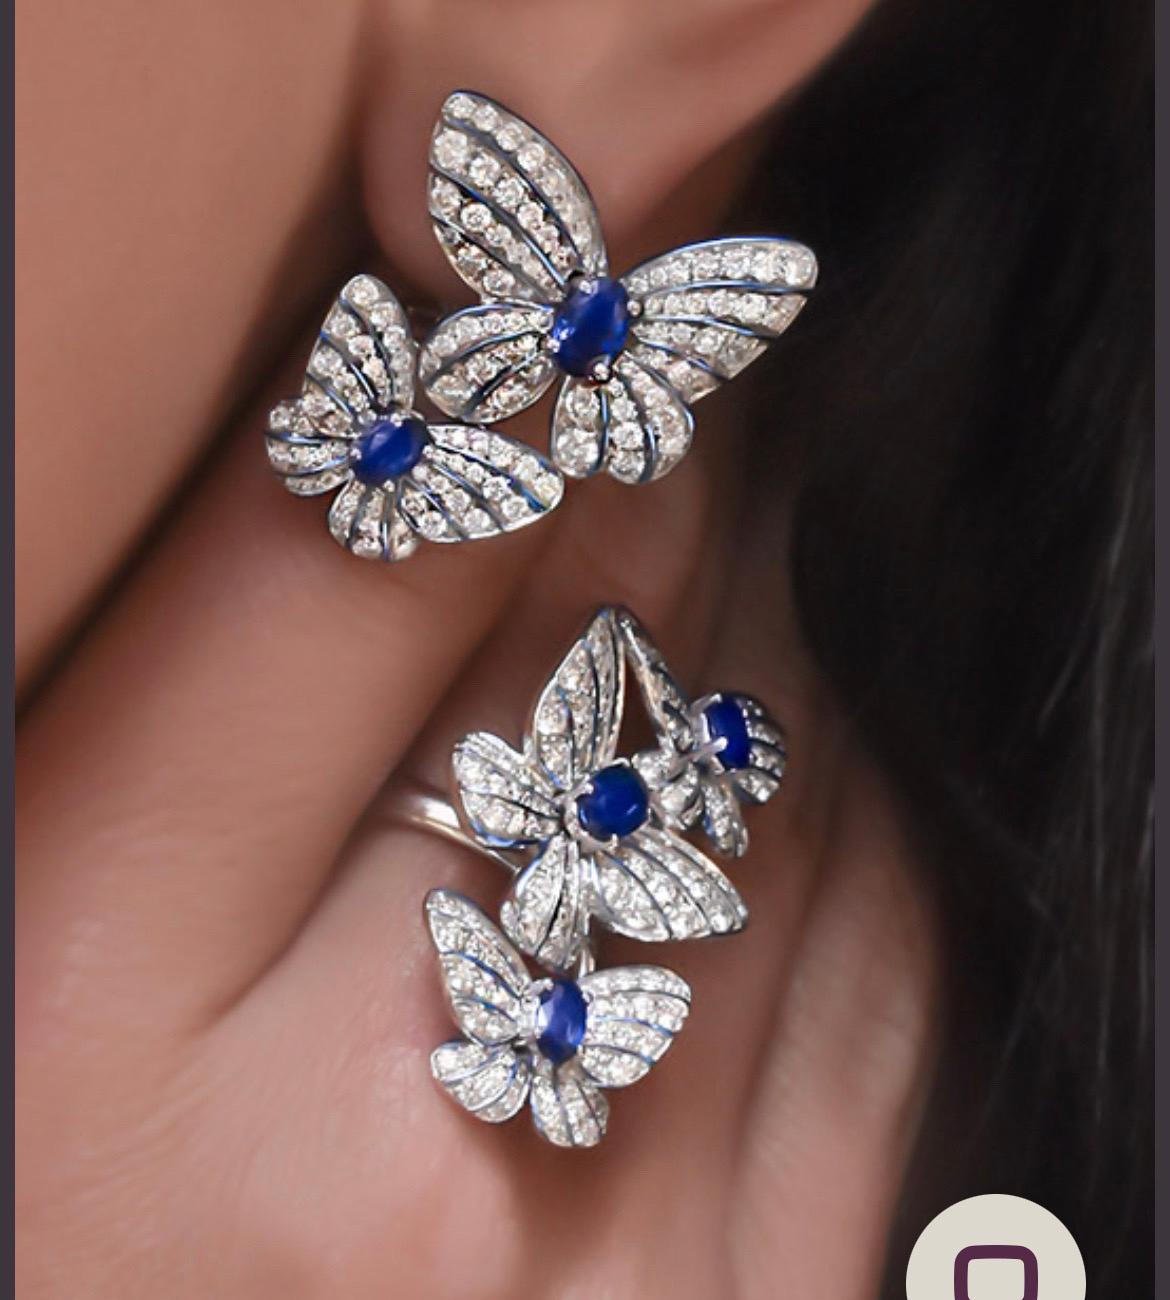 Prächtiger Ring aus 18 Karat Weißgold mit 3 Pavés  Diamant-Schmetterlinge. 
Im Zentrum jedes Schmetterlings steht ein ovaler blauer Saphir. Die Zartheit und Lebendigkeit des Schmetterlings wird durch die handgemalte, blau schillernde Emaille noch